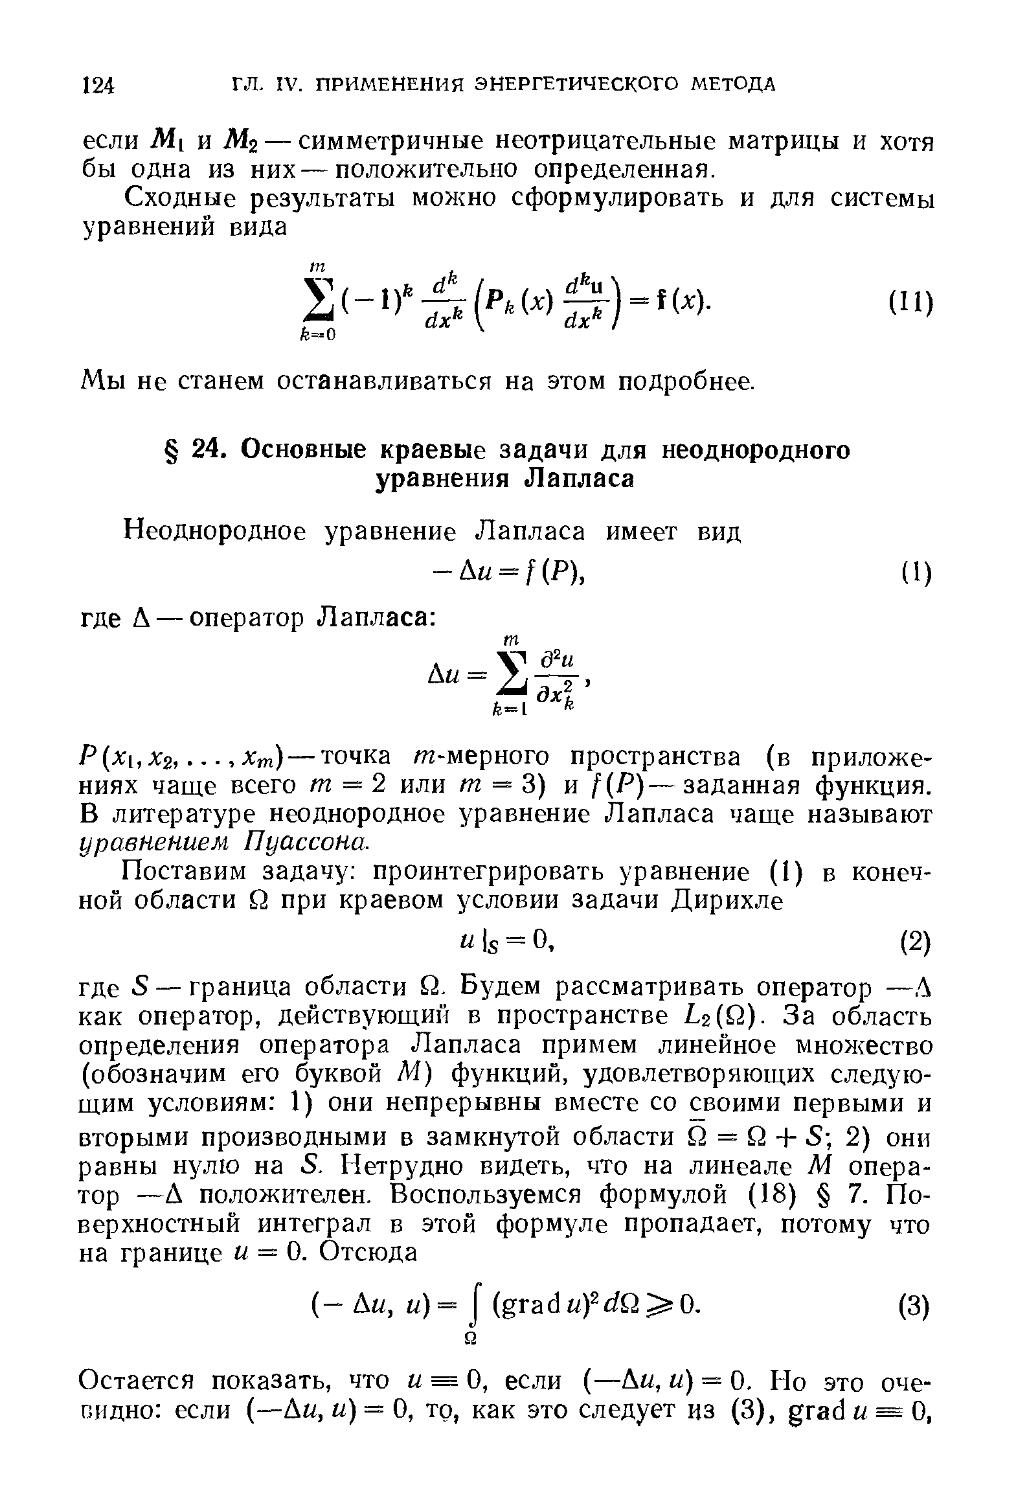 § 24. Основные краевые задачи для неоднородного уравнения Лапласа